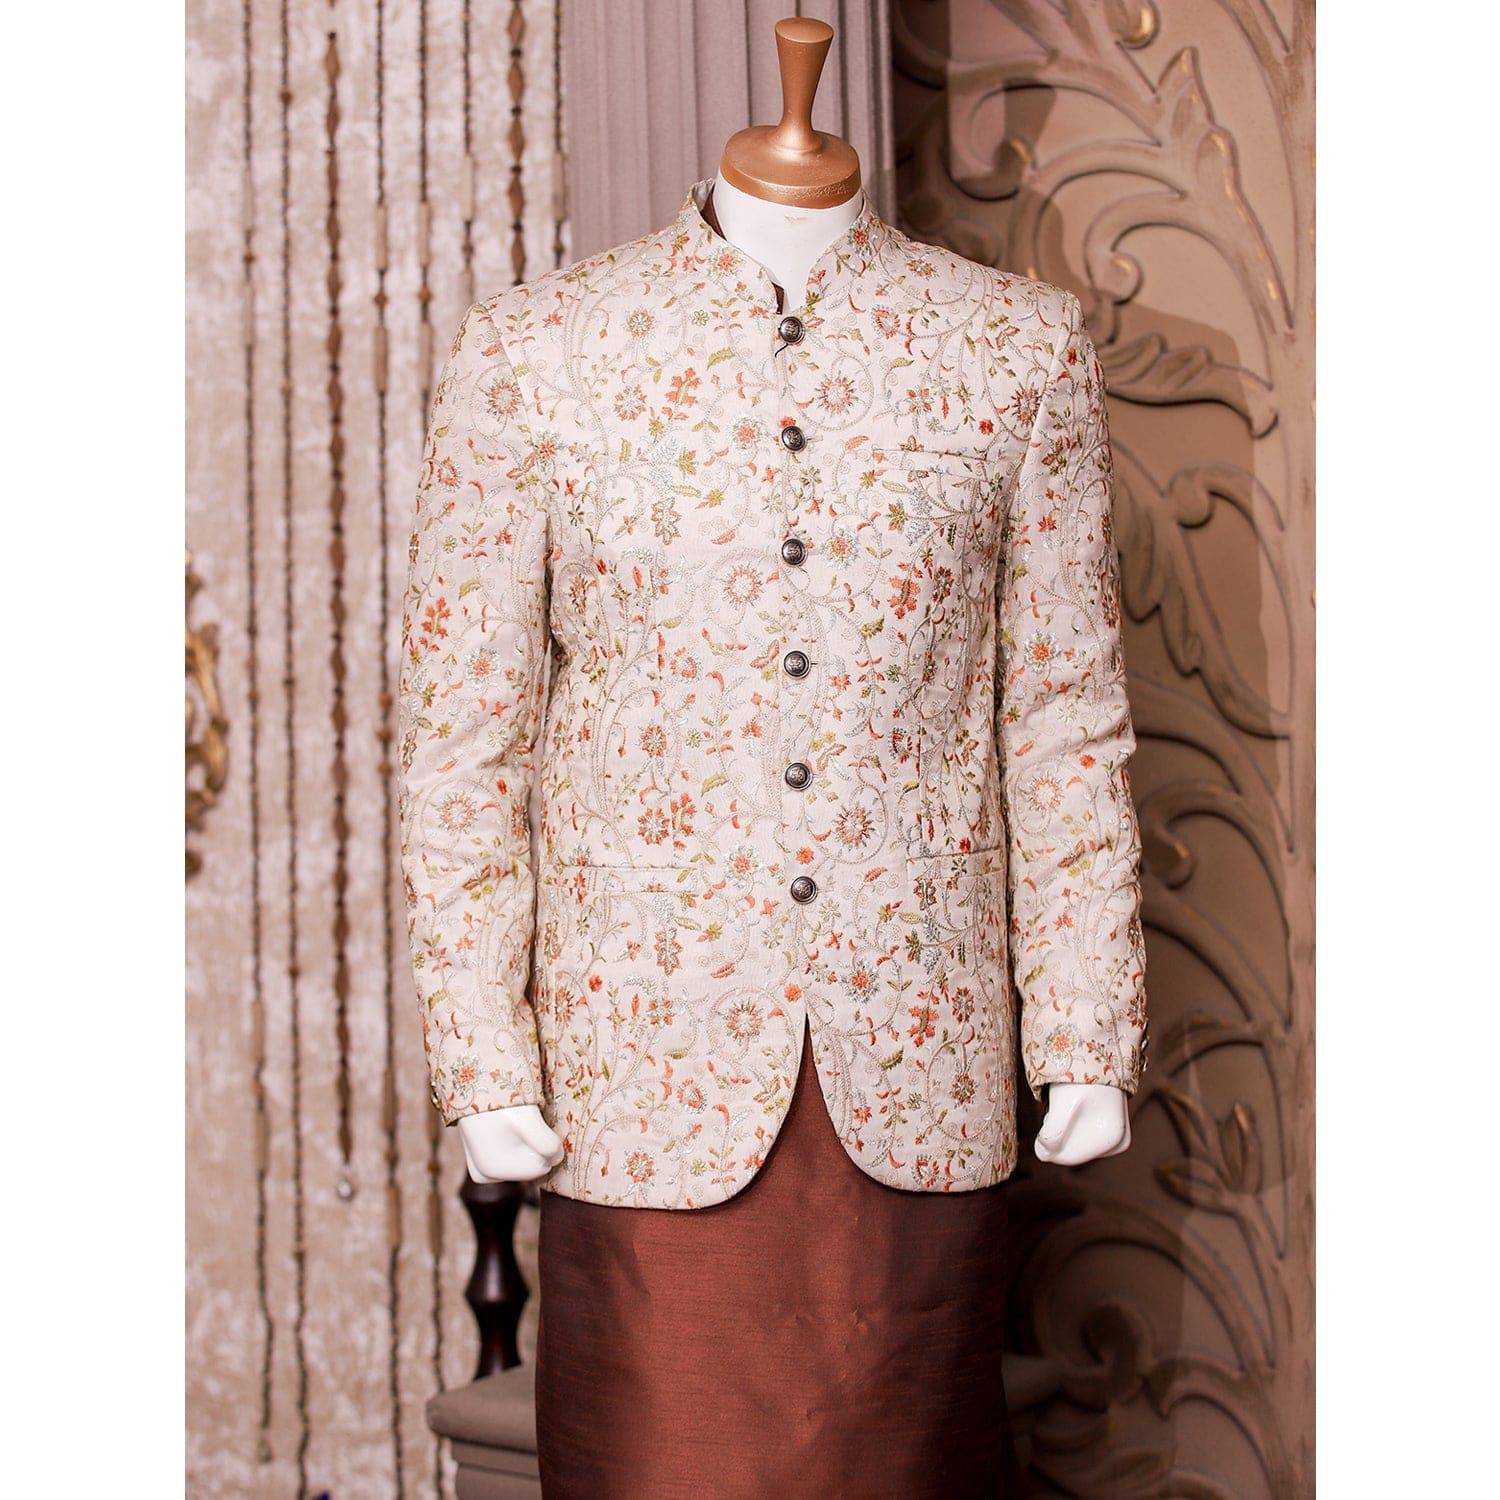 Majestic Multicolored Embroidered Prince Coat for Men - WaliaJones